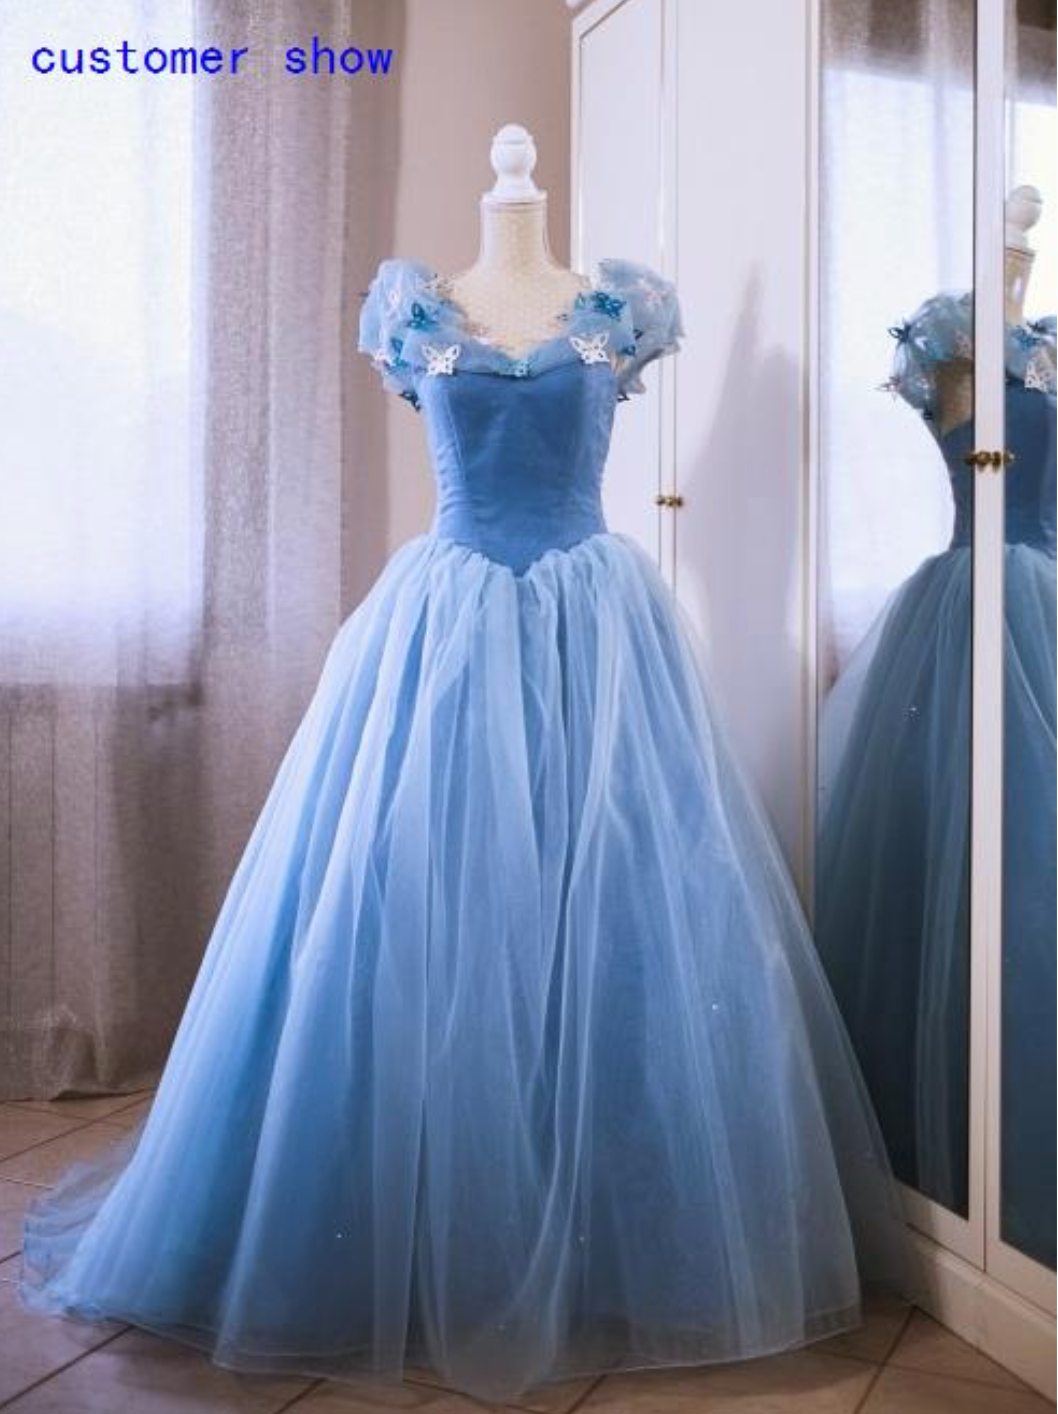 Cinderella Dress Crystals & Butterflies